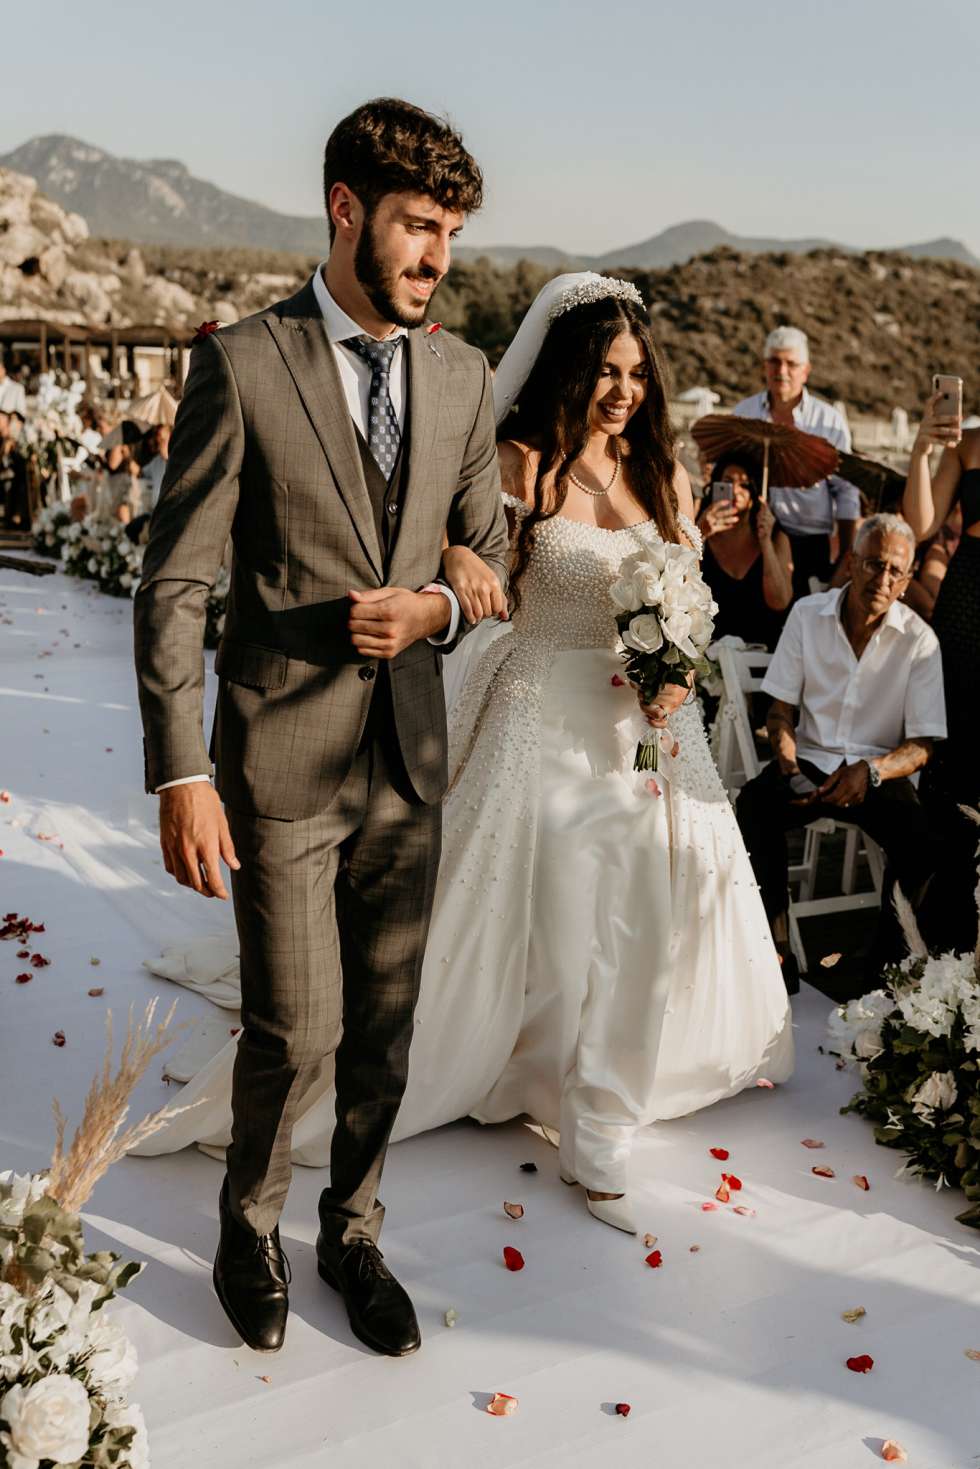 حفل زفاف ميسون بستوني ومصطفى أوزبران في قبرص